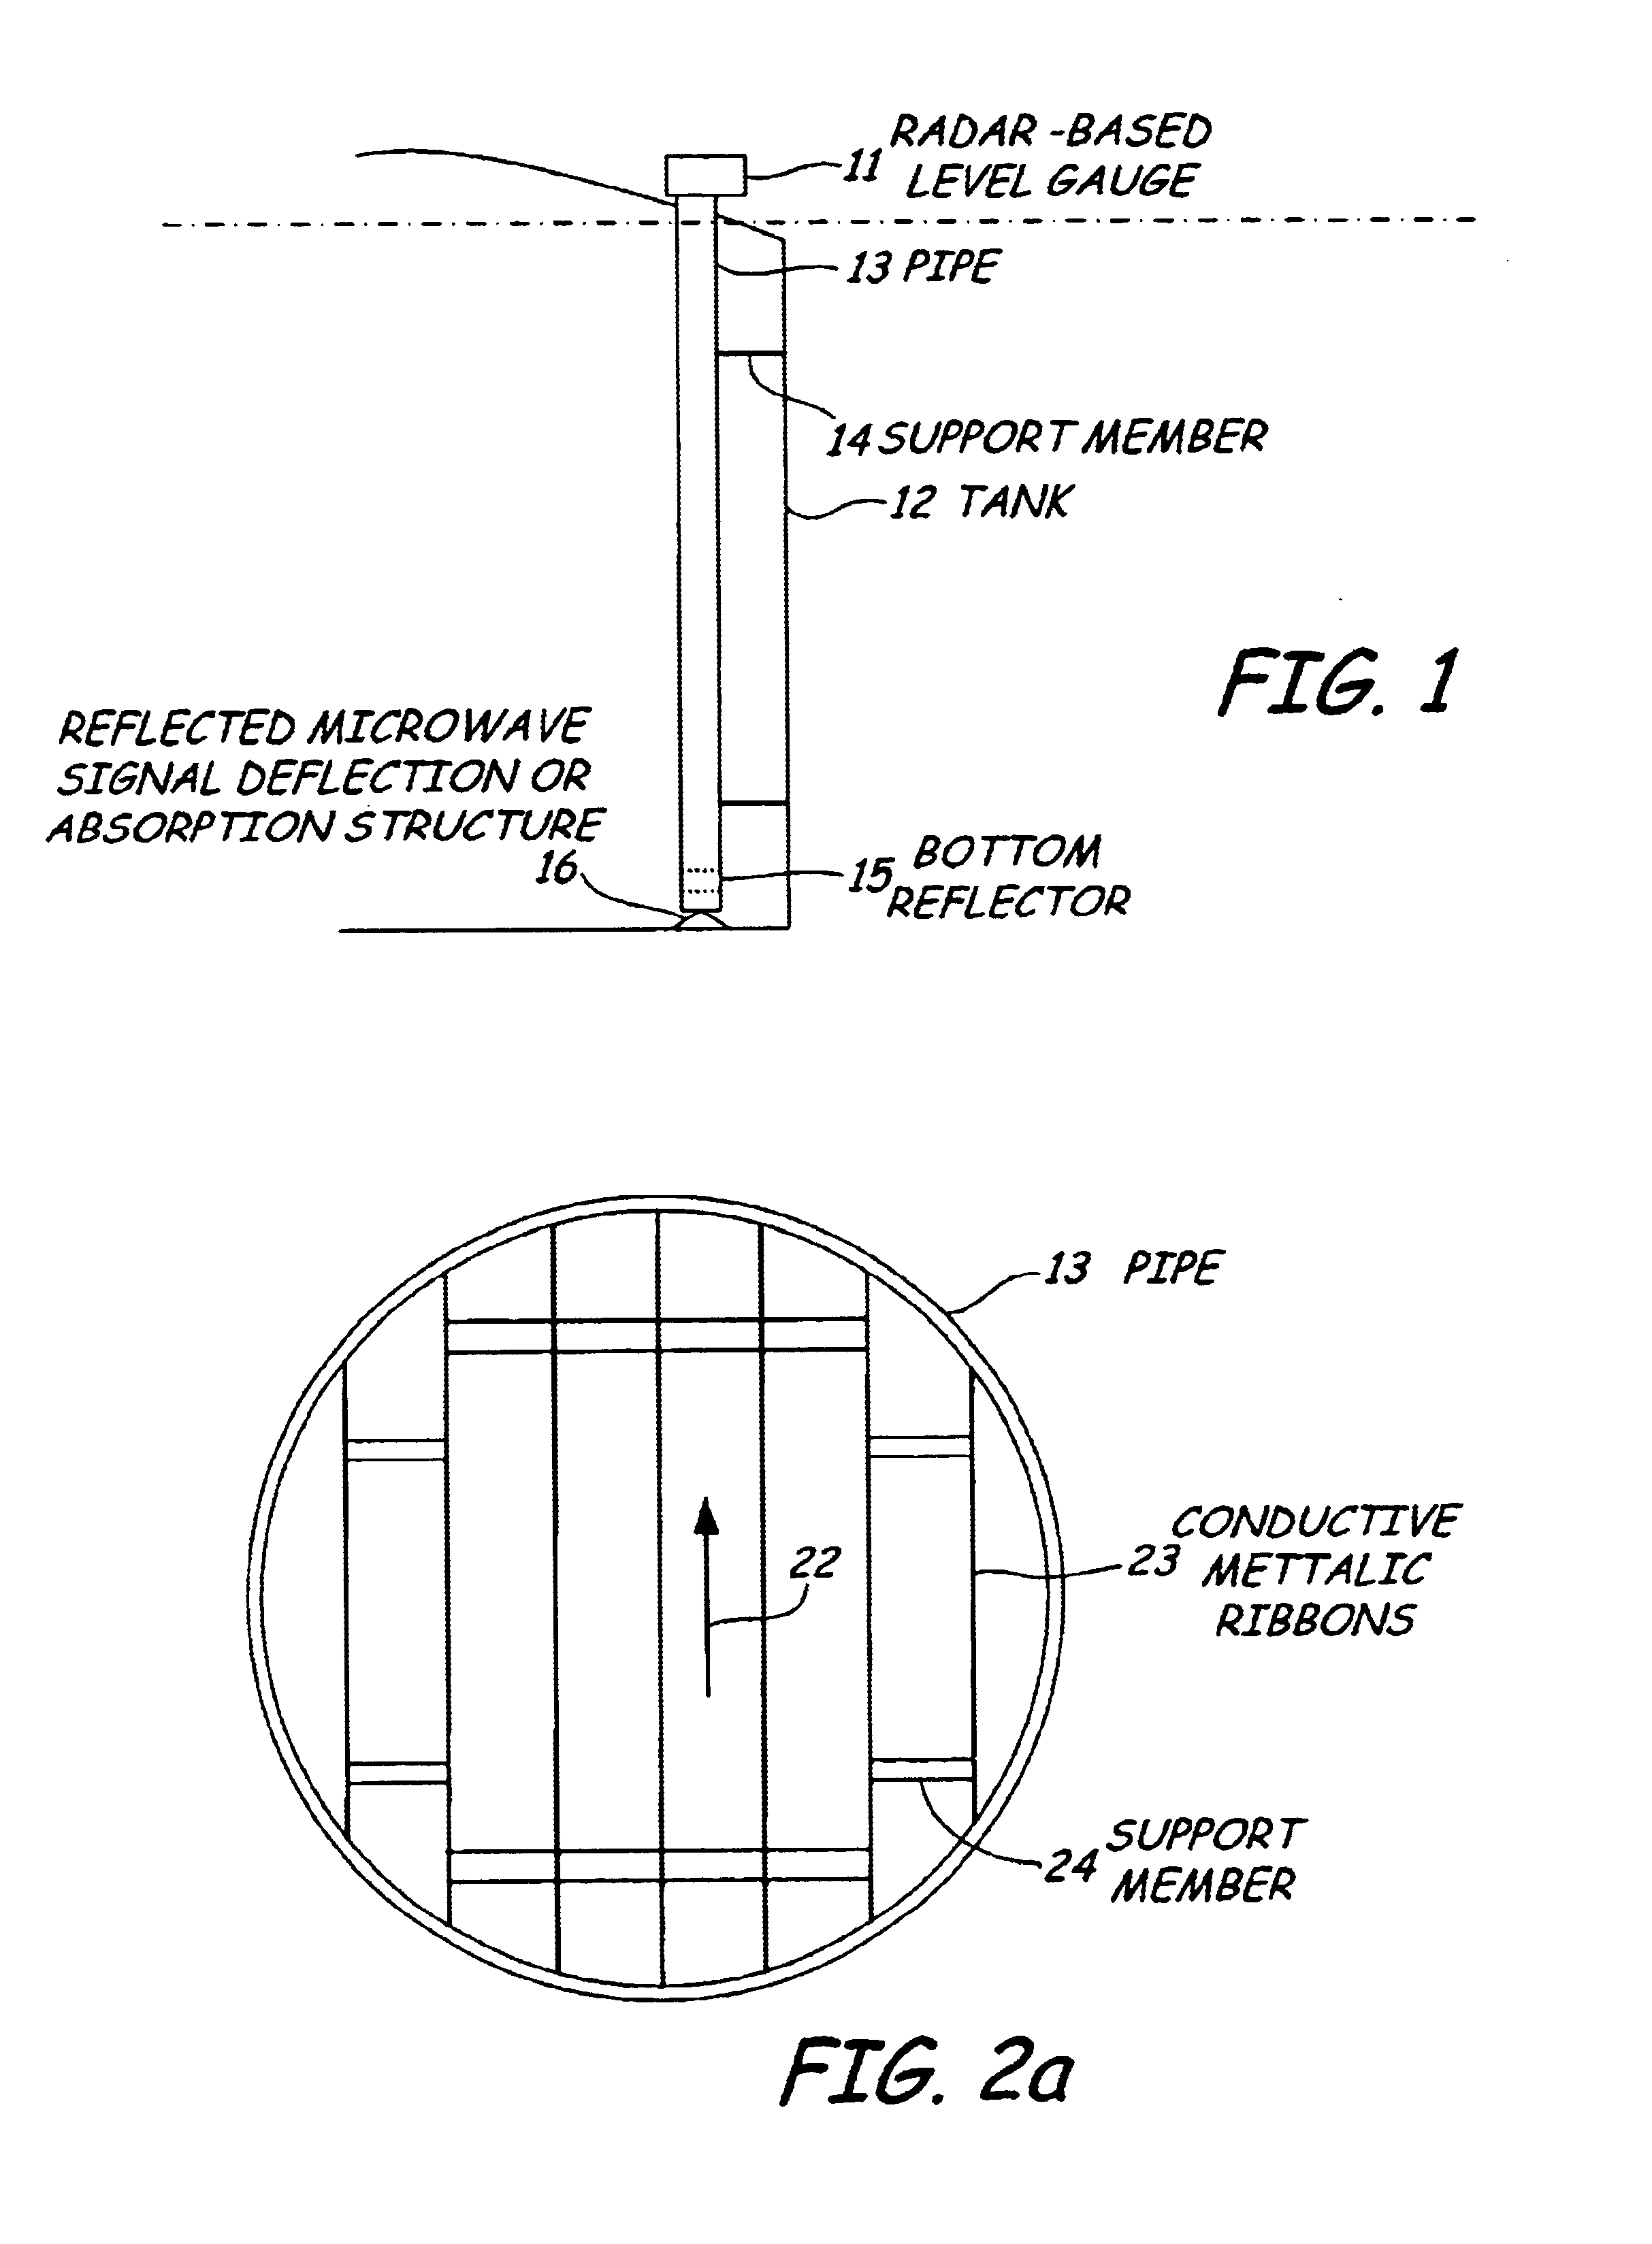 Bottom reflector for a radar-based level gauge